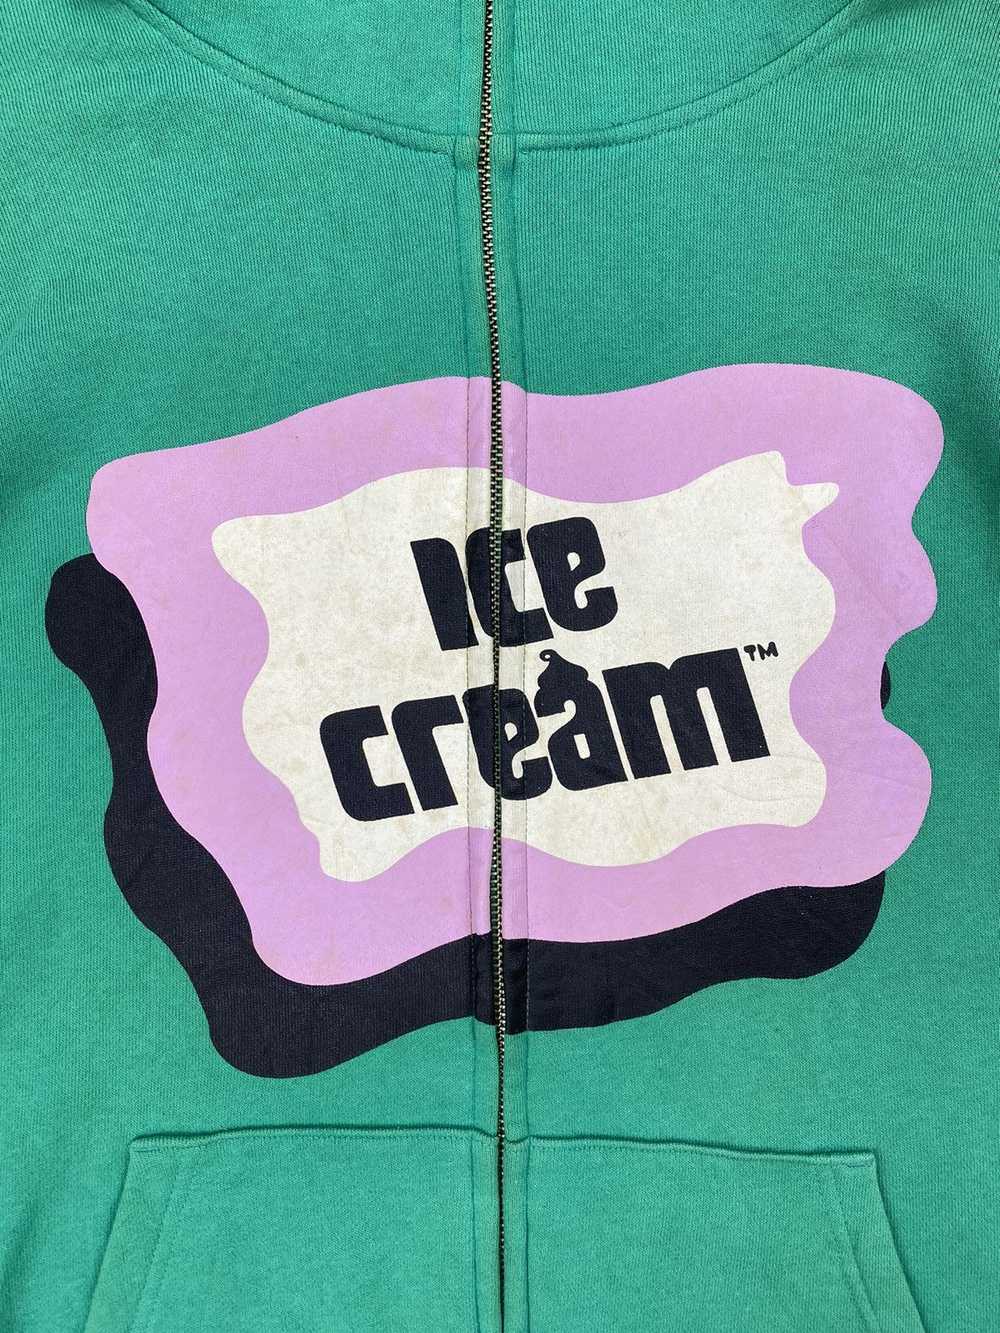 Billionaire Boys Club × Icecream Ice Cream Cones … - image 3